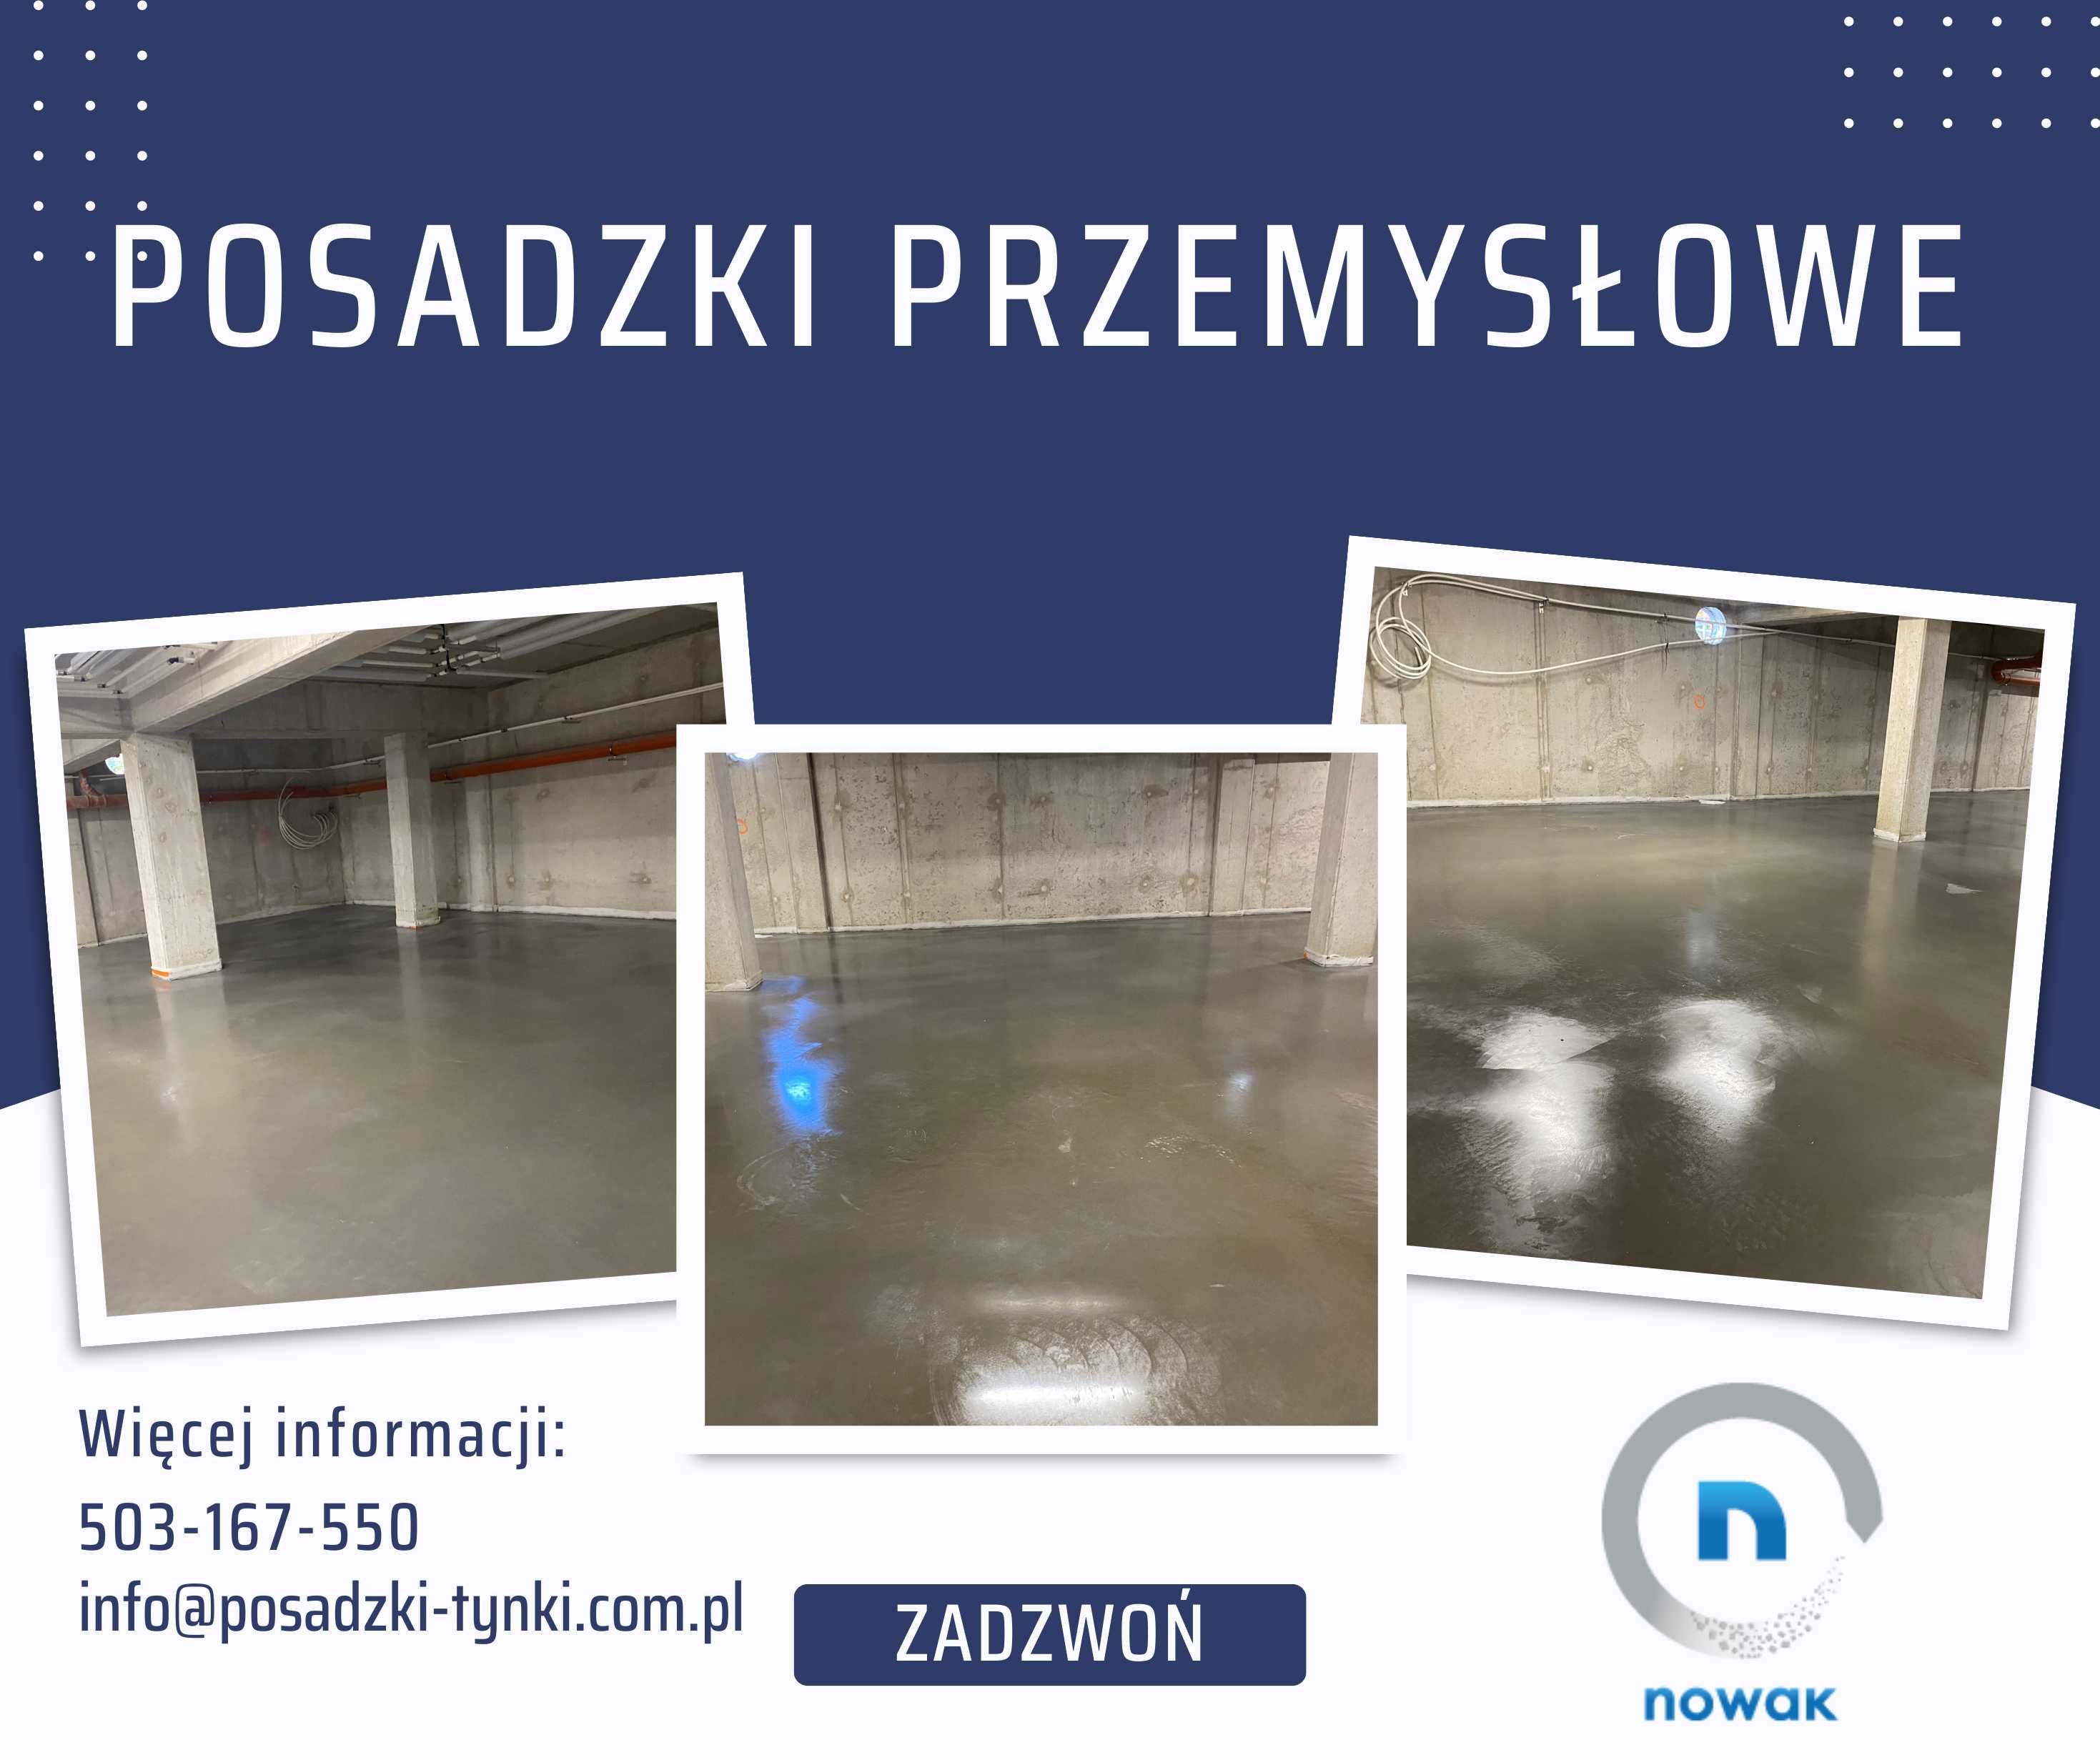 Posadzki przemysłowe betonowe - Wrocław i okolice